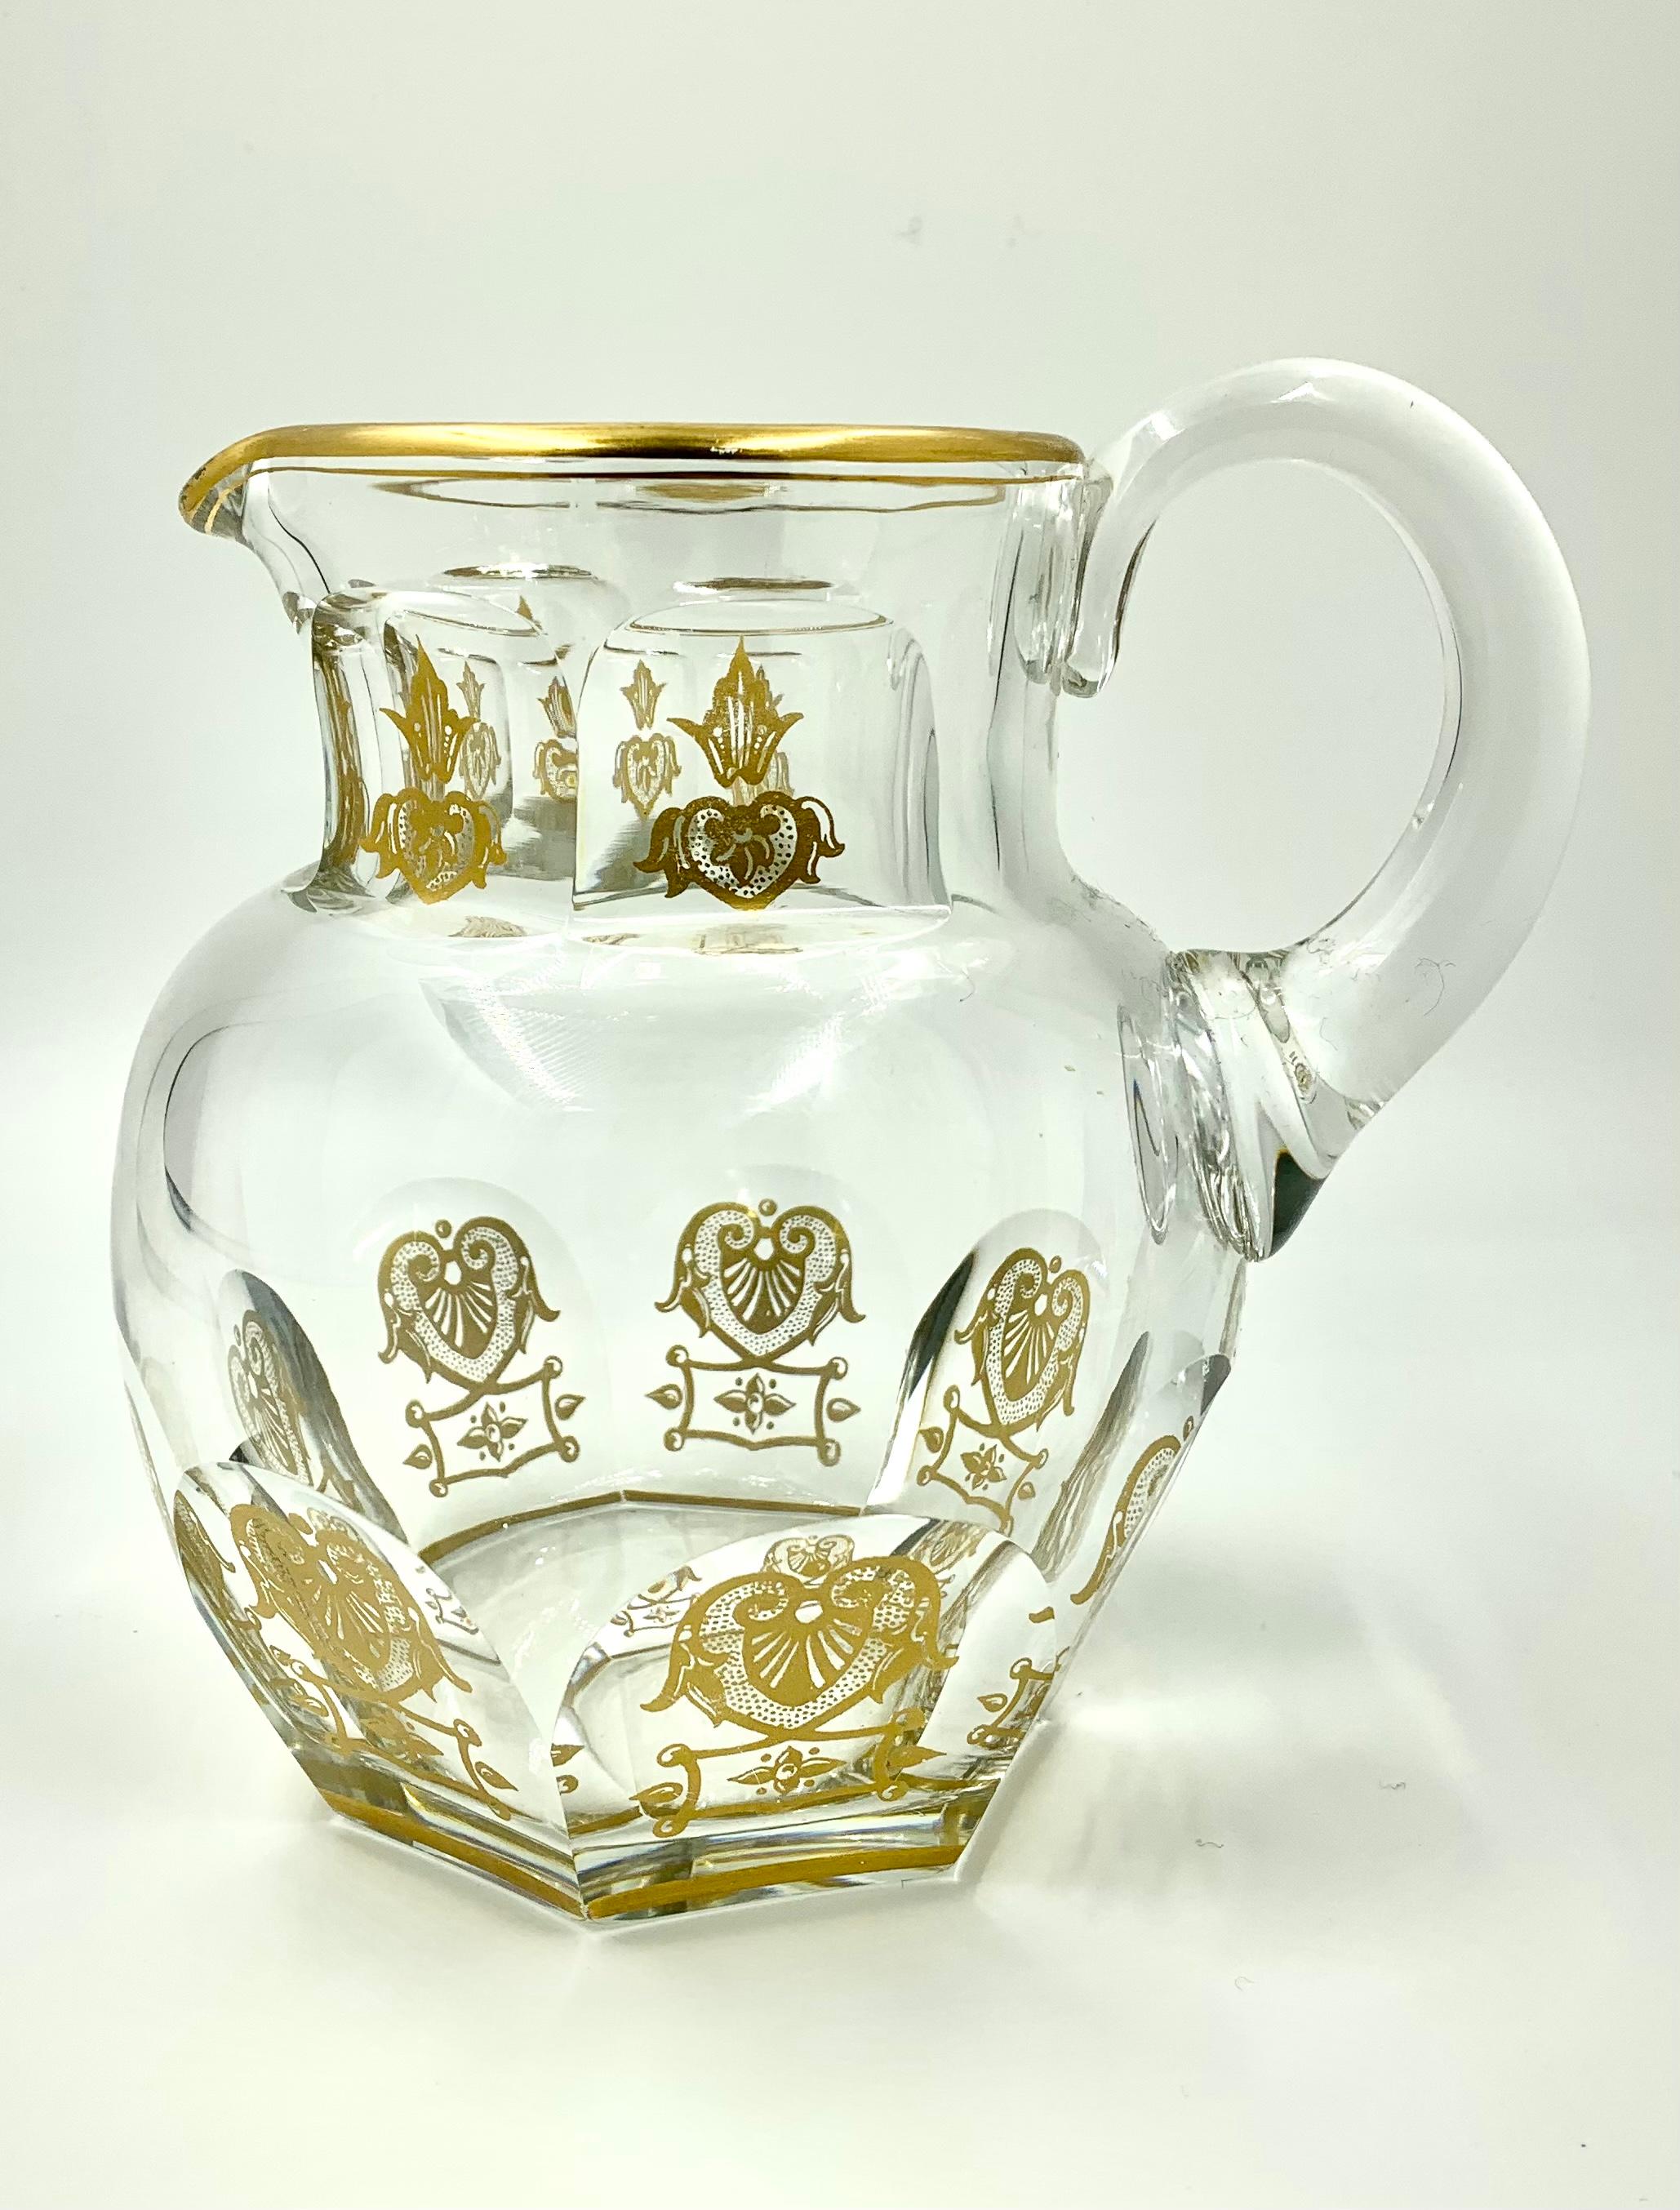 Feine Baccarat Empire Harcourt Cocktail-/Wasserkanne.
Das Empire Harcourt Muster ist eines der begehrtesten Designs von Baccarat. Er ist seit 1841 ein Klassiker und zierte die Tische bedeutender Persönlichkeiten aus aller Welt, darunter Könige,